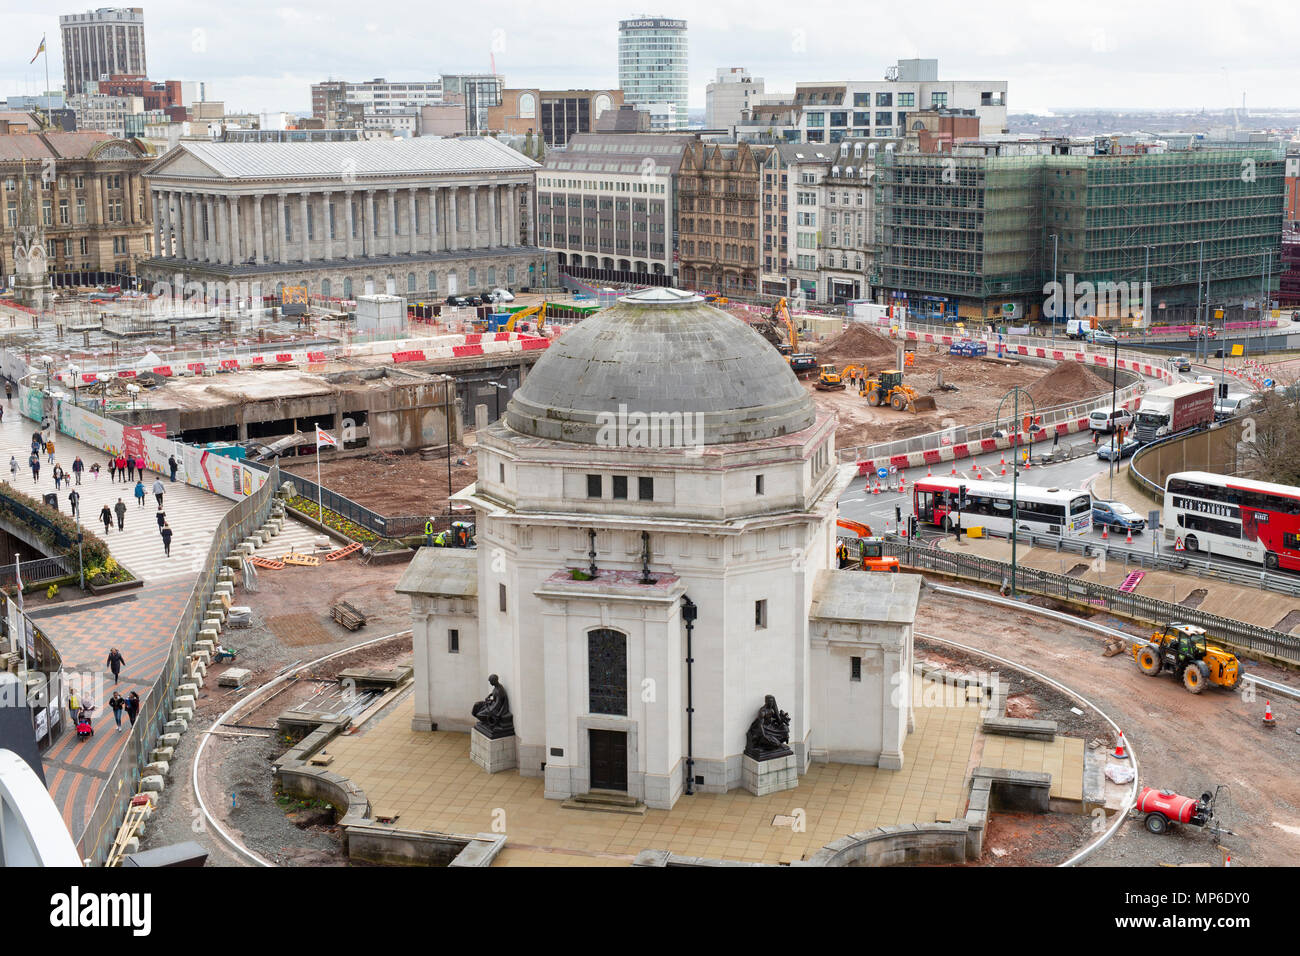 Lavori di costruzione attorno alla Sala della memoria in Centenary Square, Birmingham. La vista è la Biblioteca di Birmingham. Foto Stock